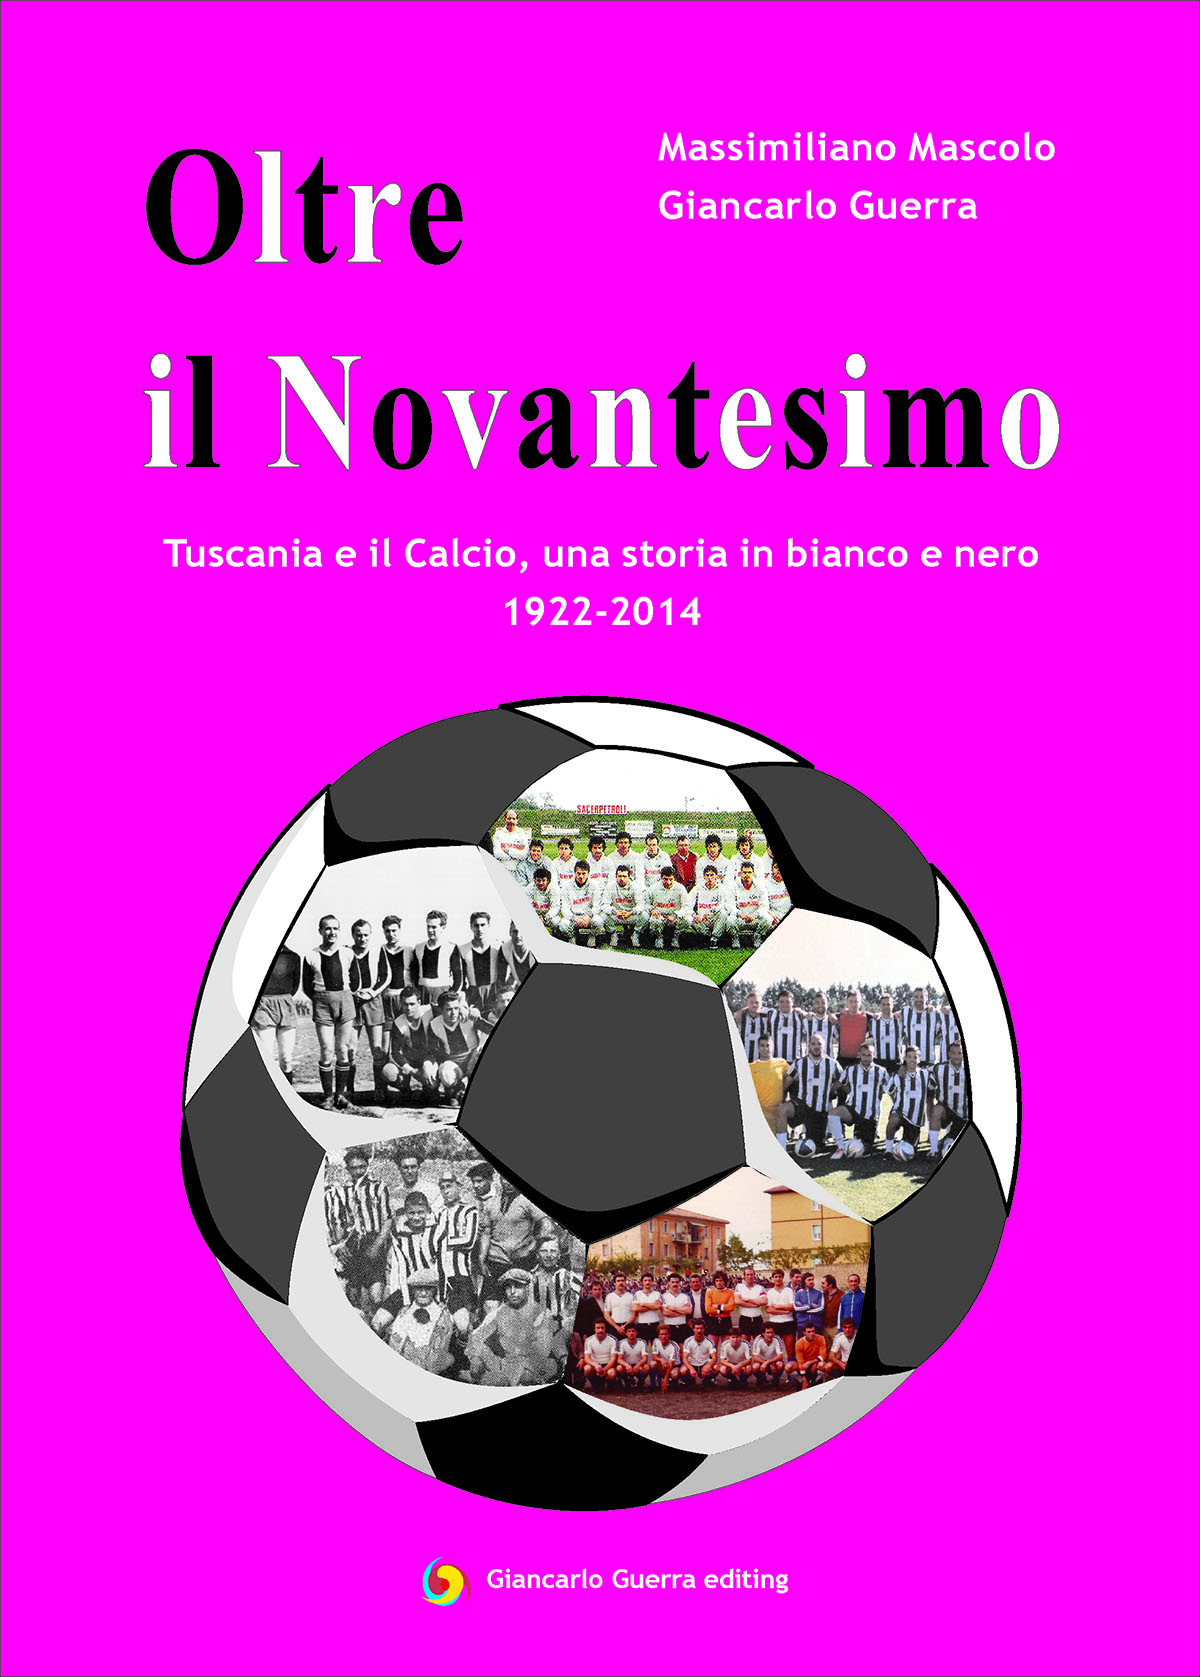 “Oltre il Novantesimo, Tuscania e il Calcio, una storia in bianco e nero 1922-2014”